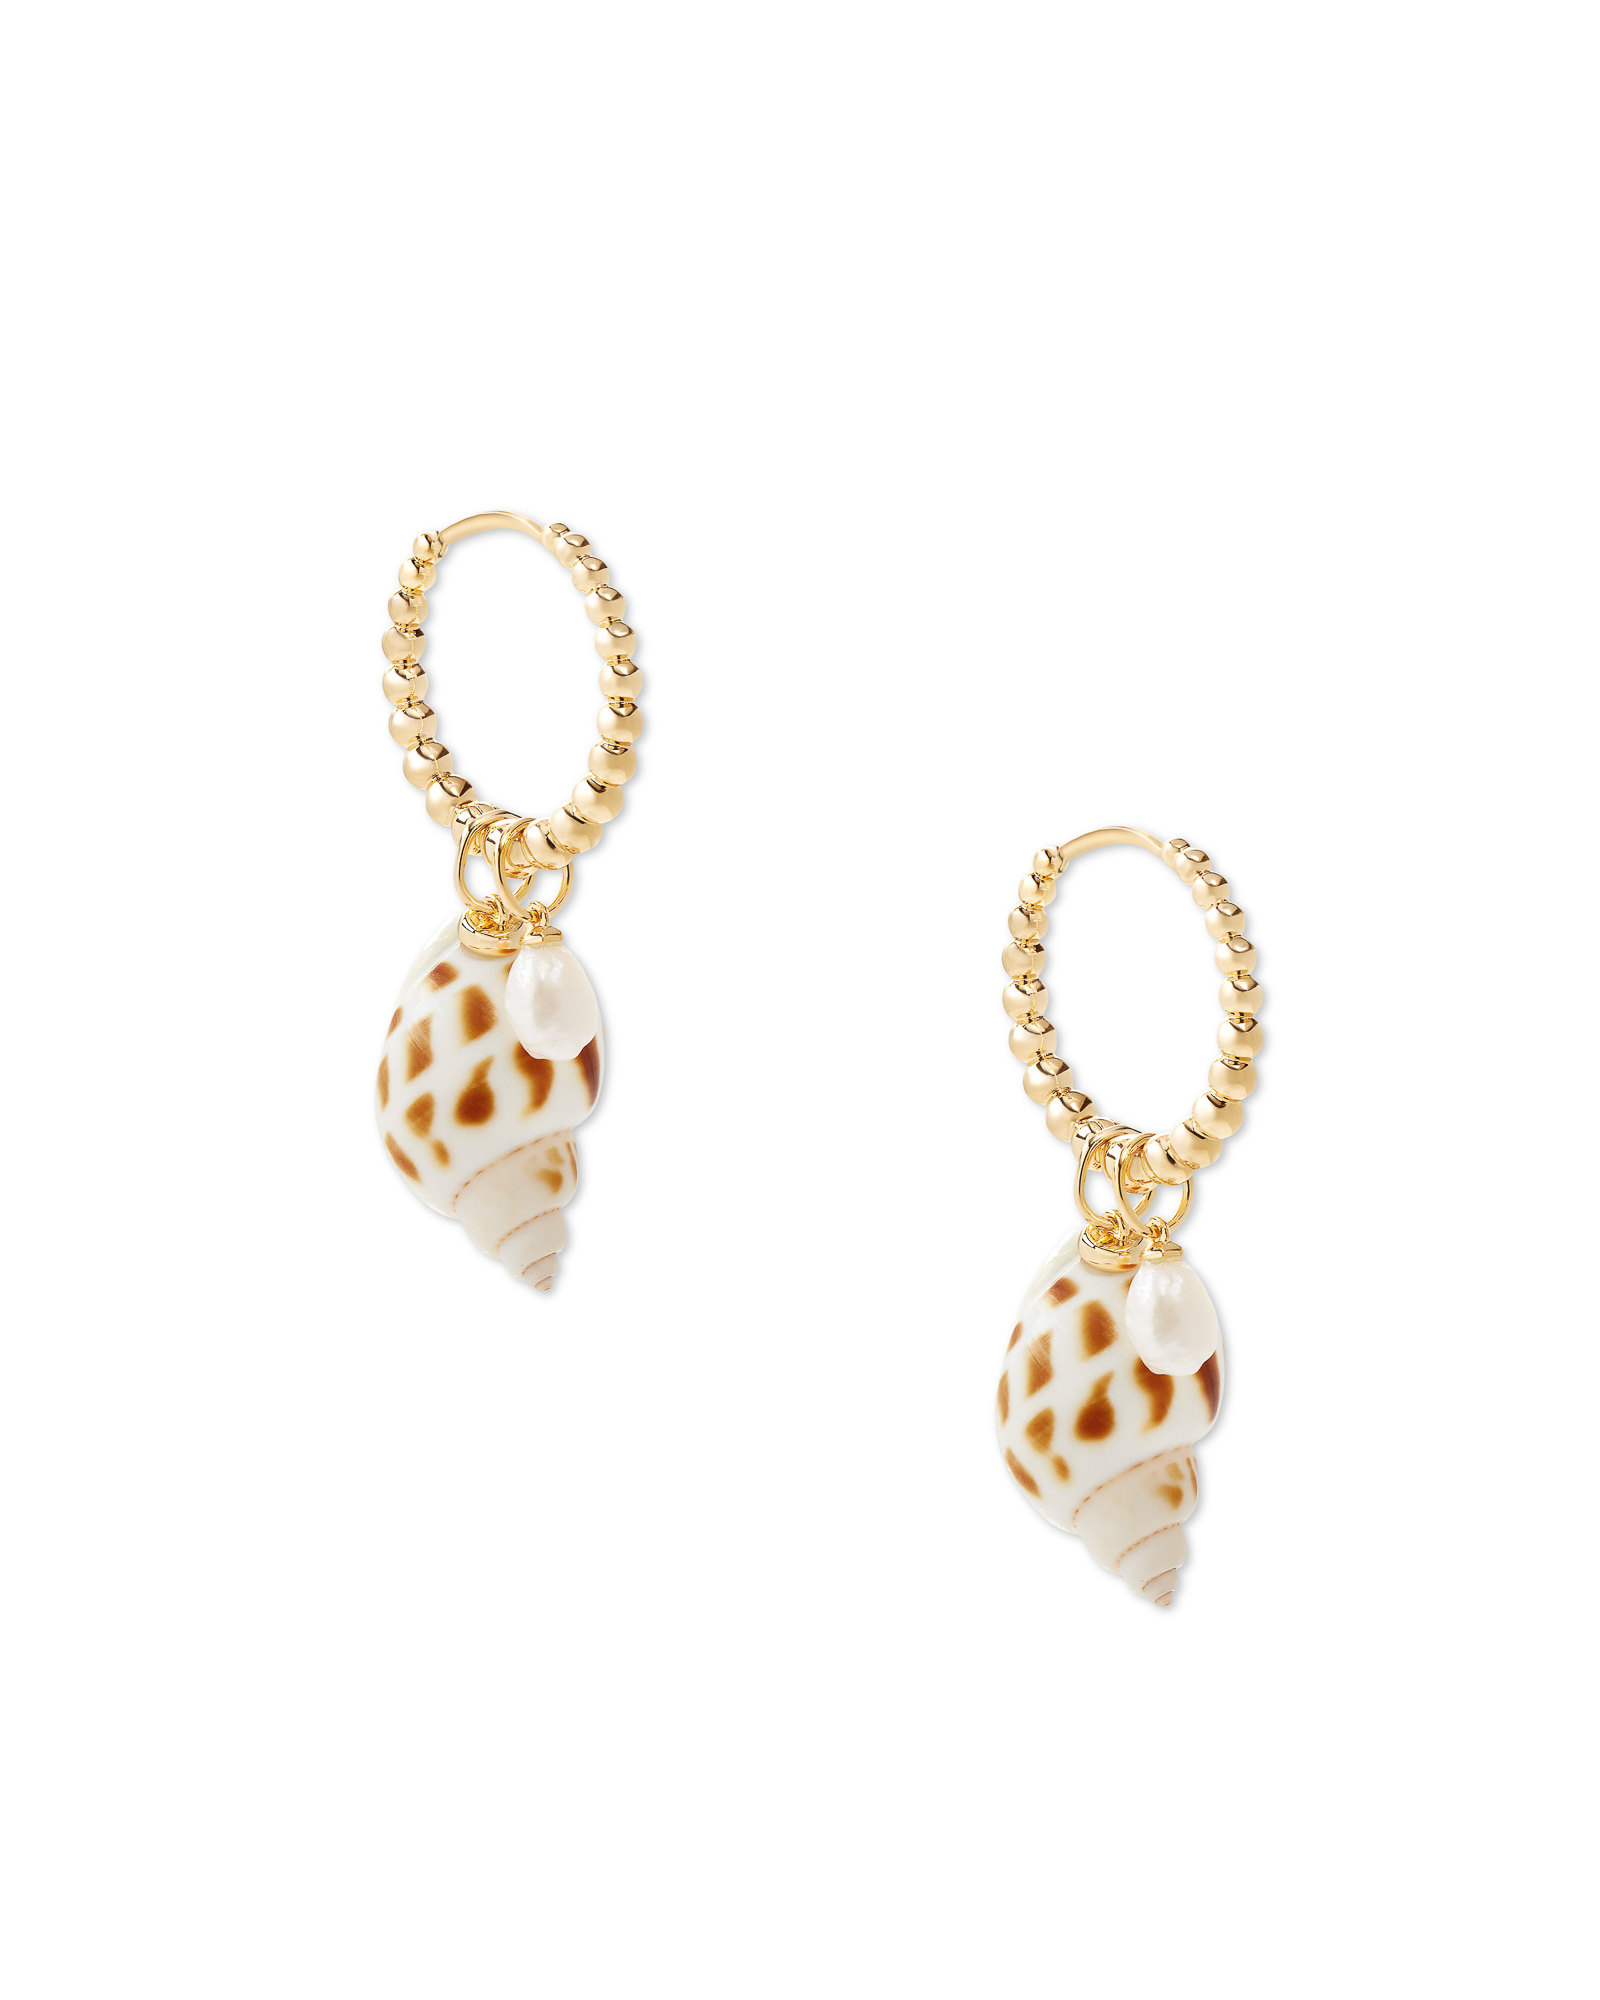 Oleana Gold Huggie Earrings in Ivory Spotted Shell | Kendra Scott